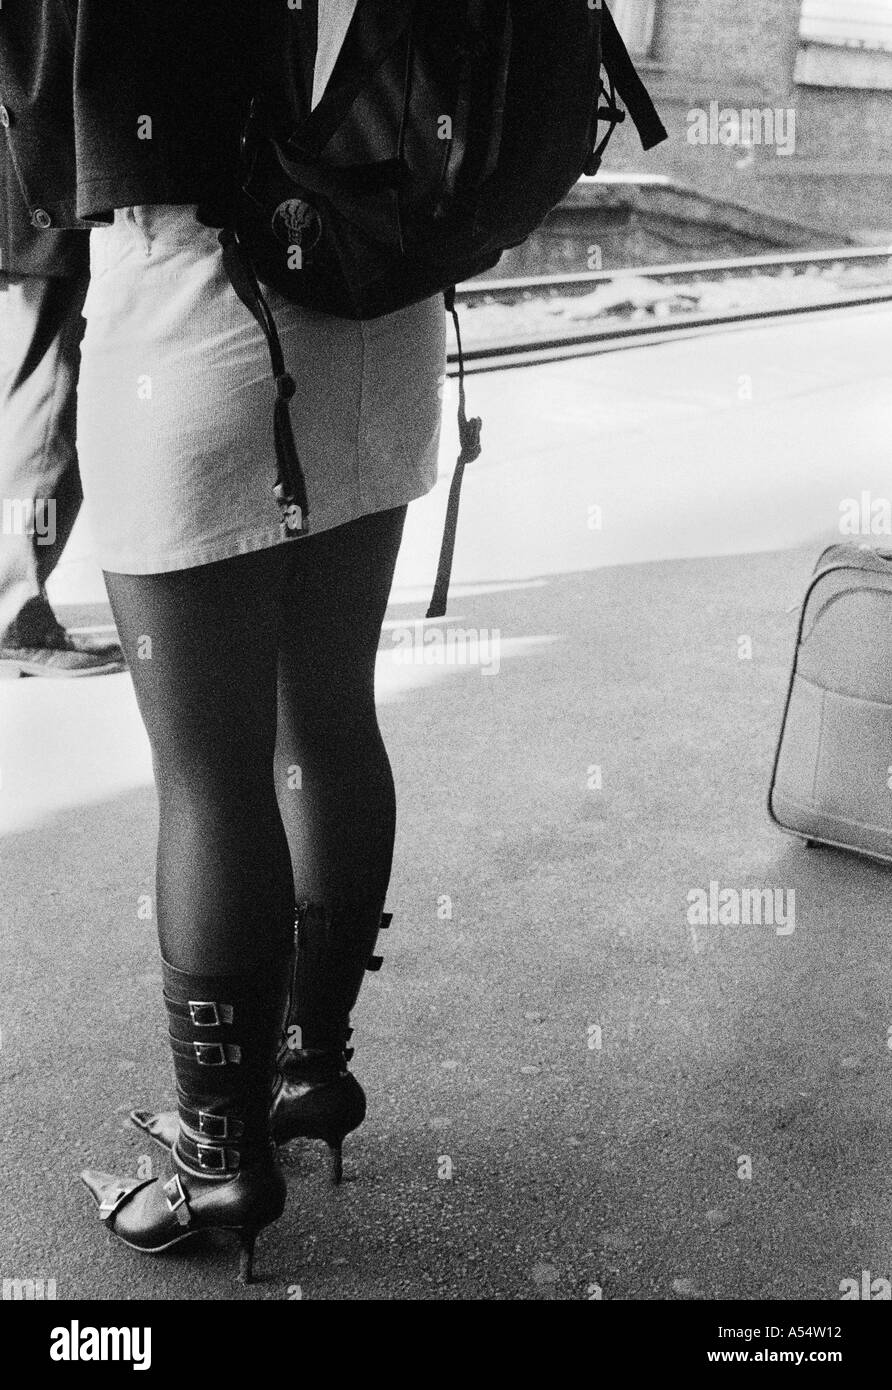 Formschöne Mädchen in einem Mini-Rock und Stiefeln von hinten untere Hälfte stehend auf einem Bahnsteig schwarz / weiß Stockfoto